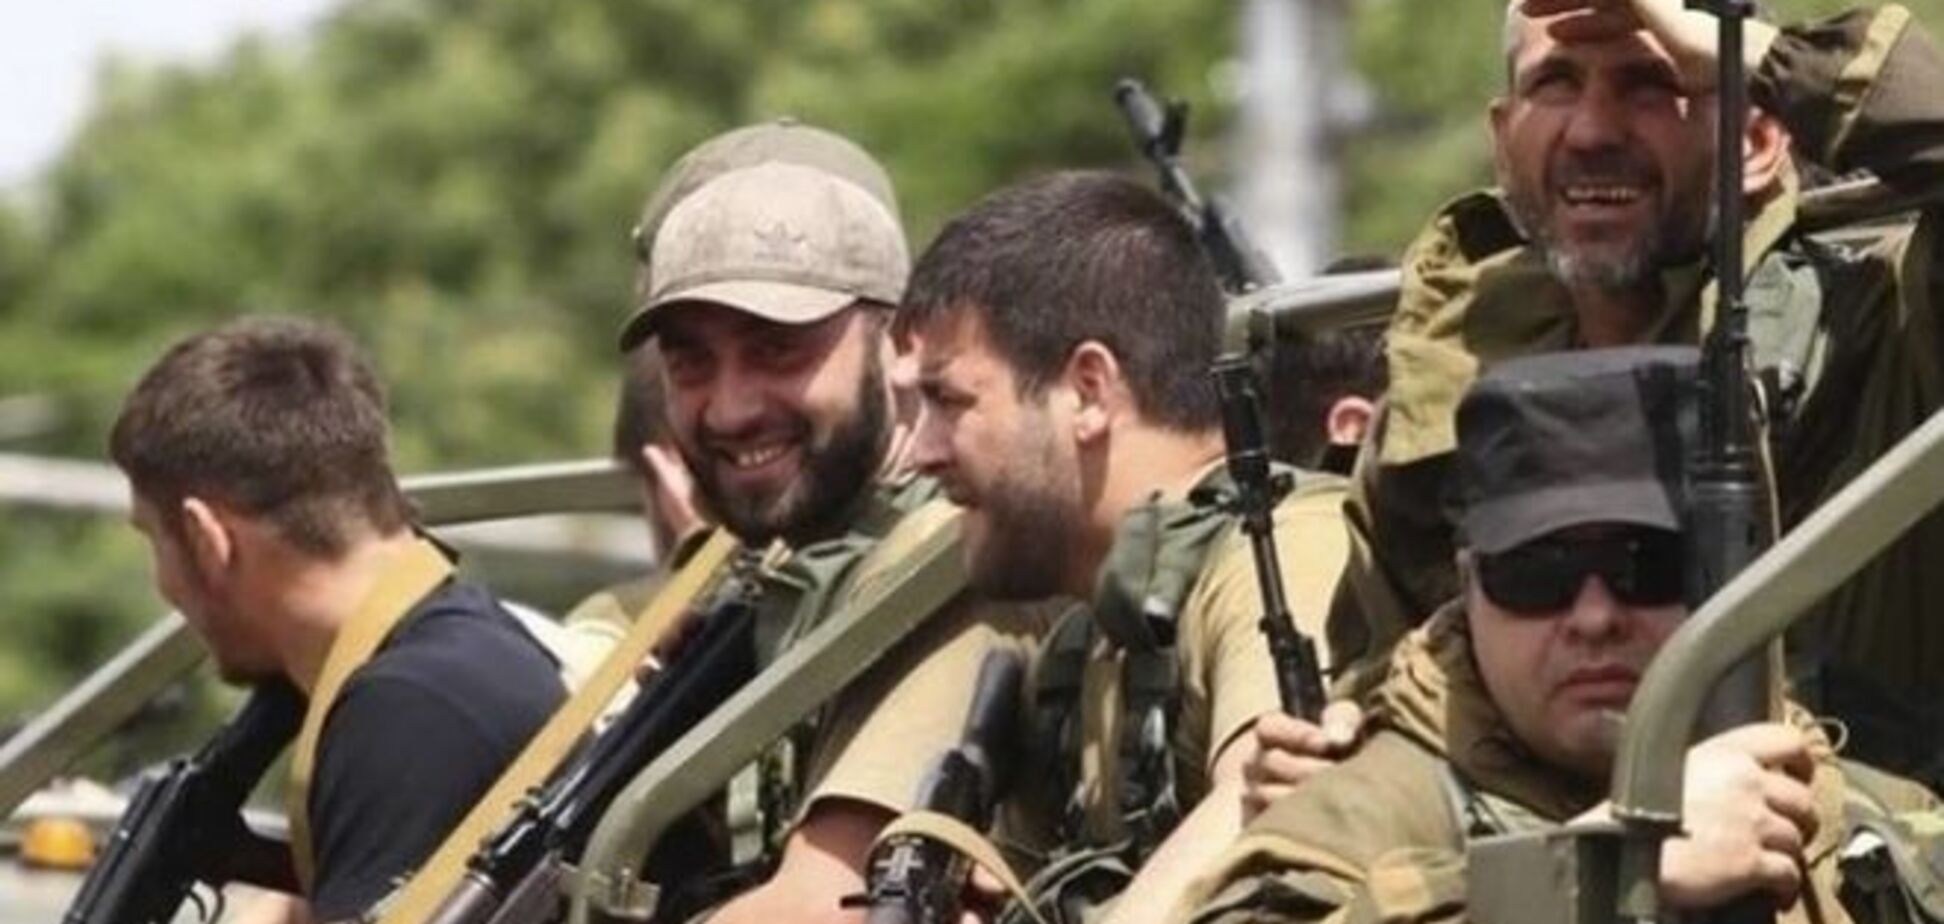 Бабченко: за войной между стрелковцами и кадыровцами понаблюдаю с интересом